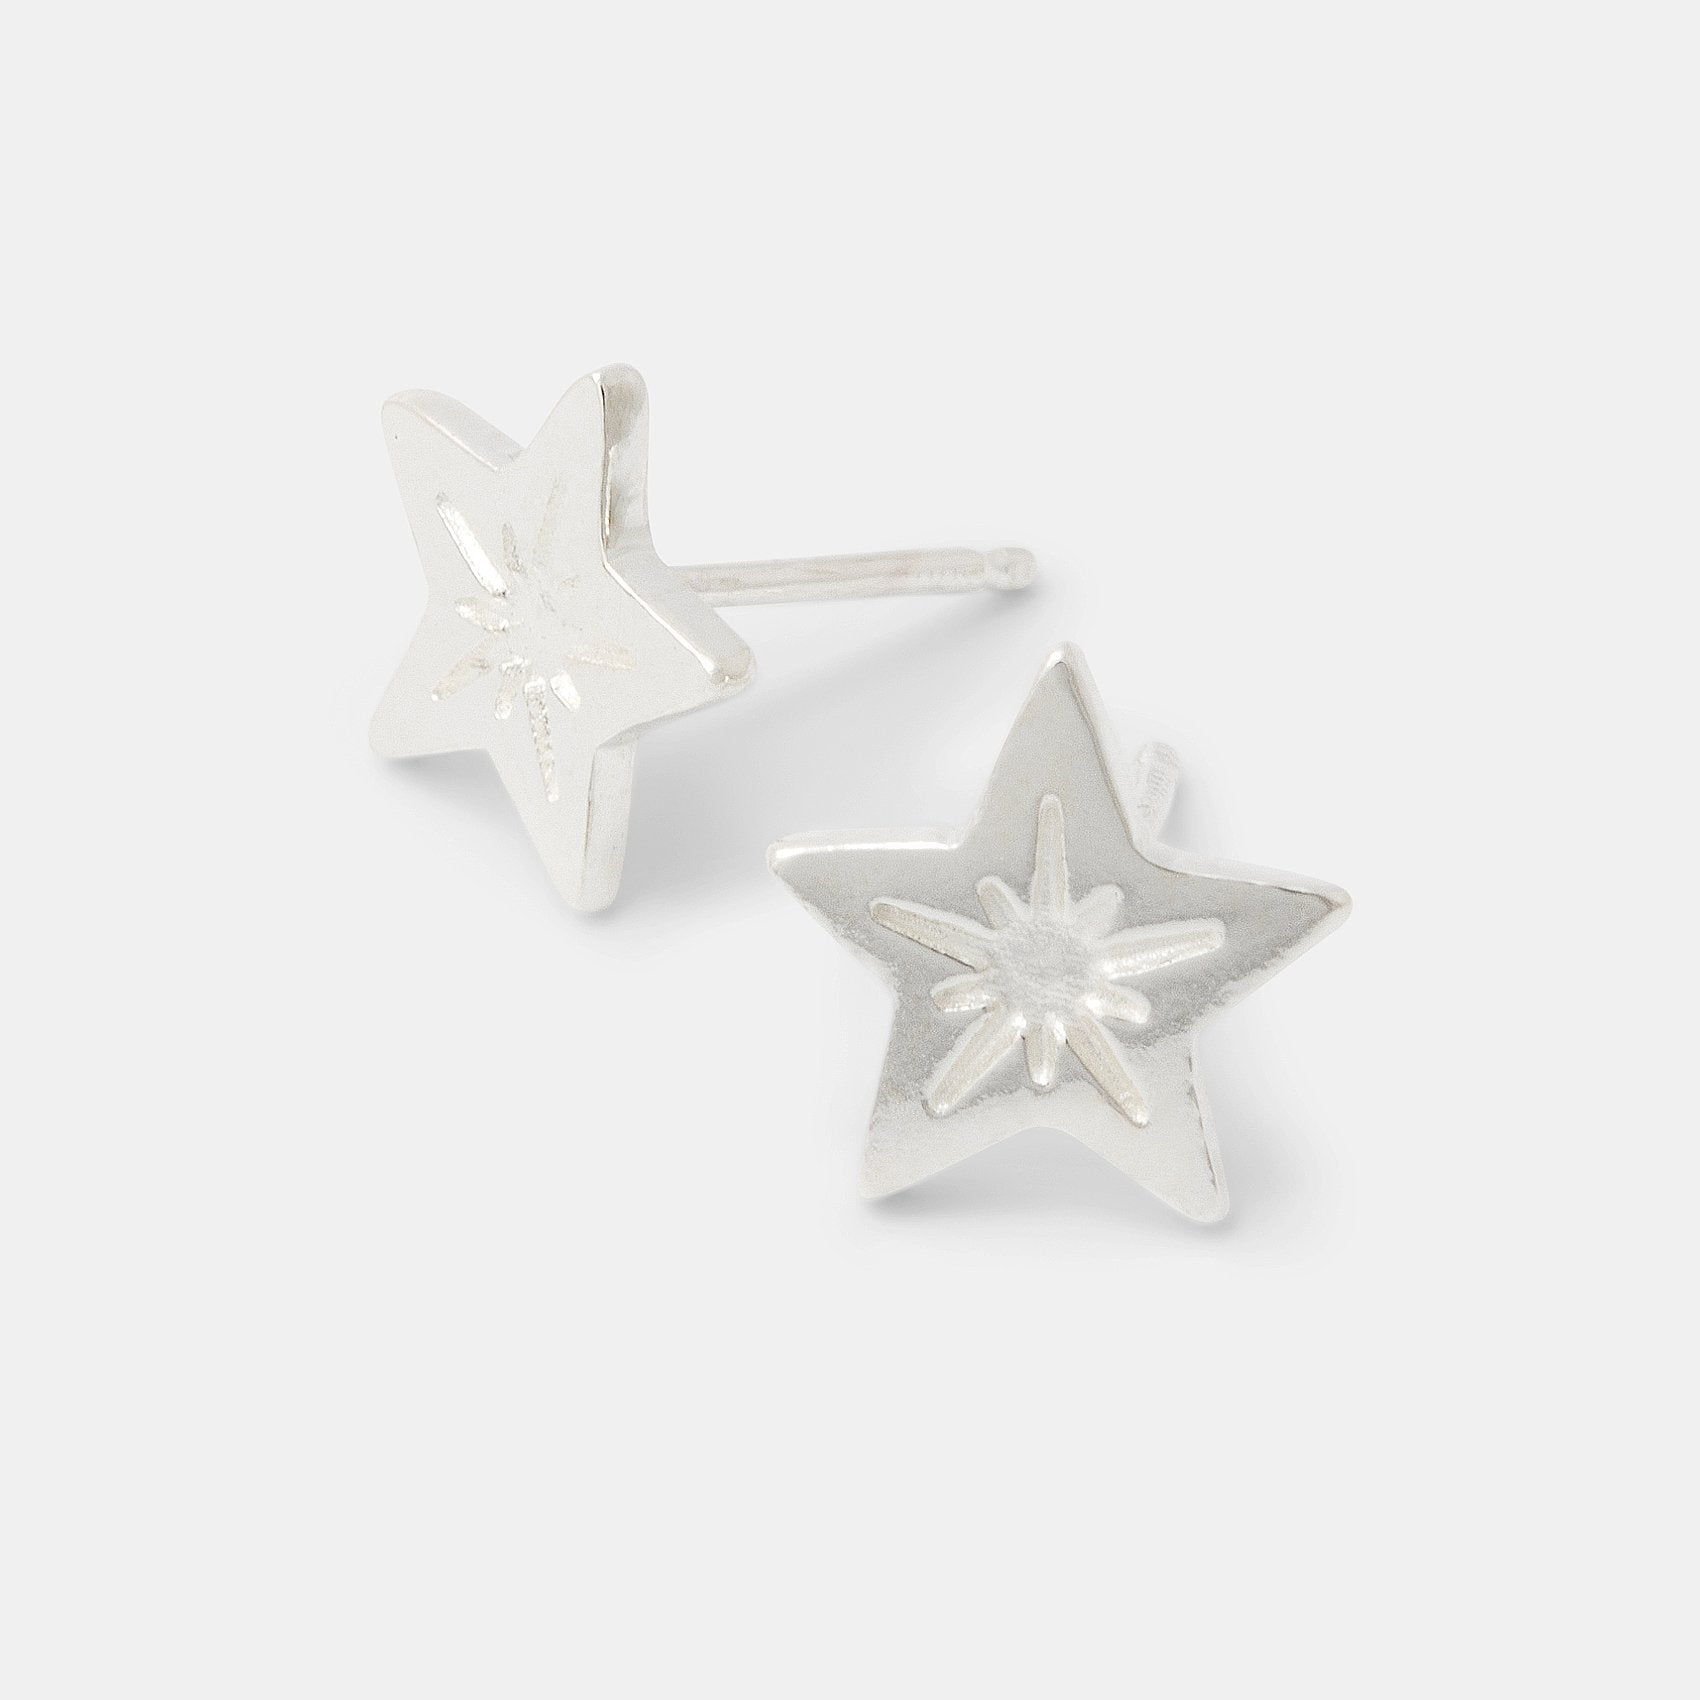 Little star stud earrings - Simone Walsh Jewellery Australia